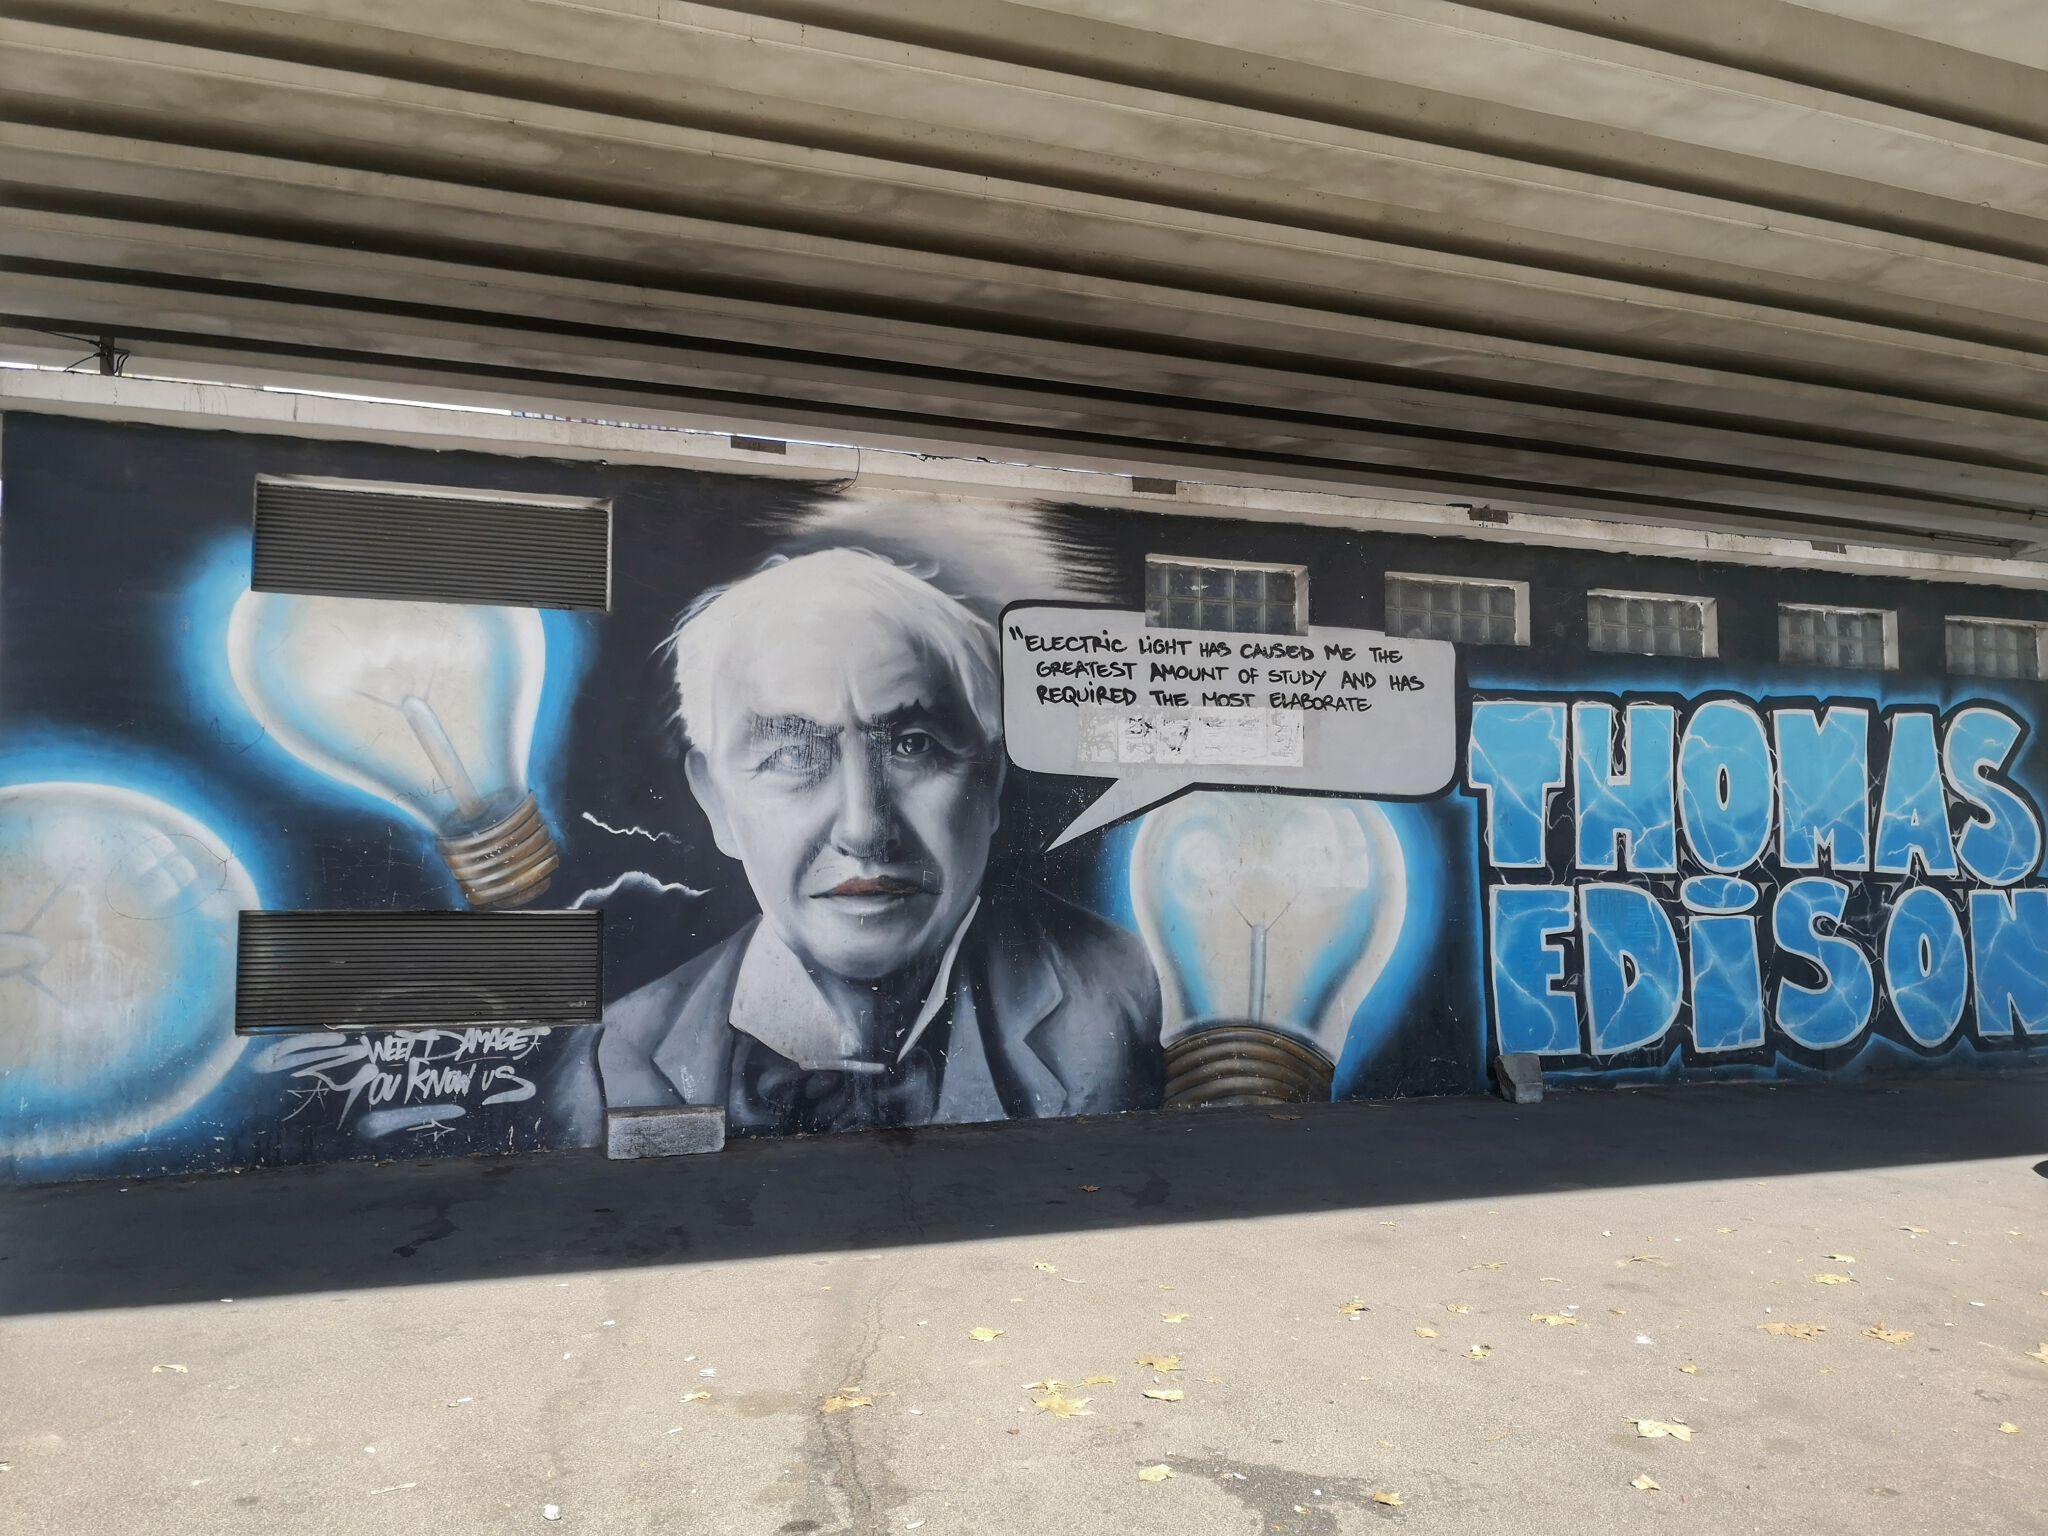 BOEME, Sweet Damage Crew&mdash;Thomas Edison - City of Energy